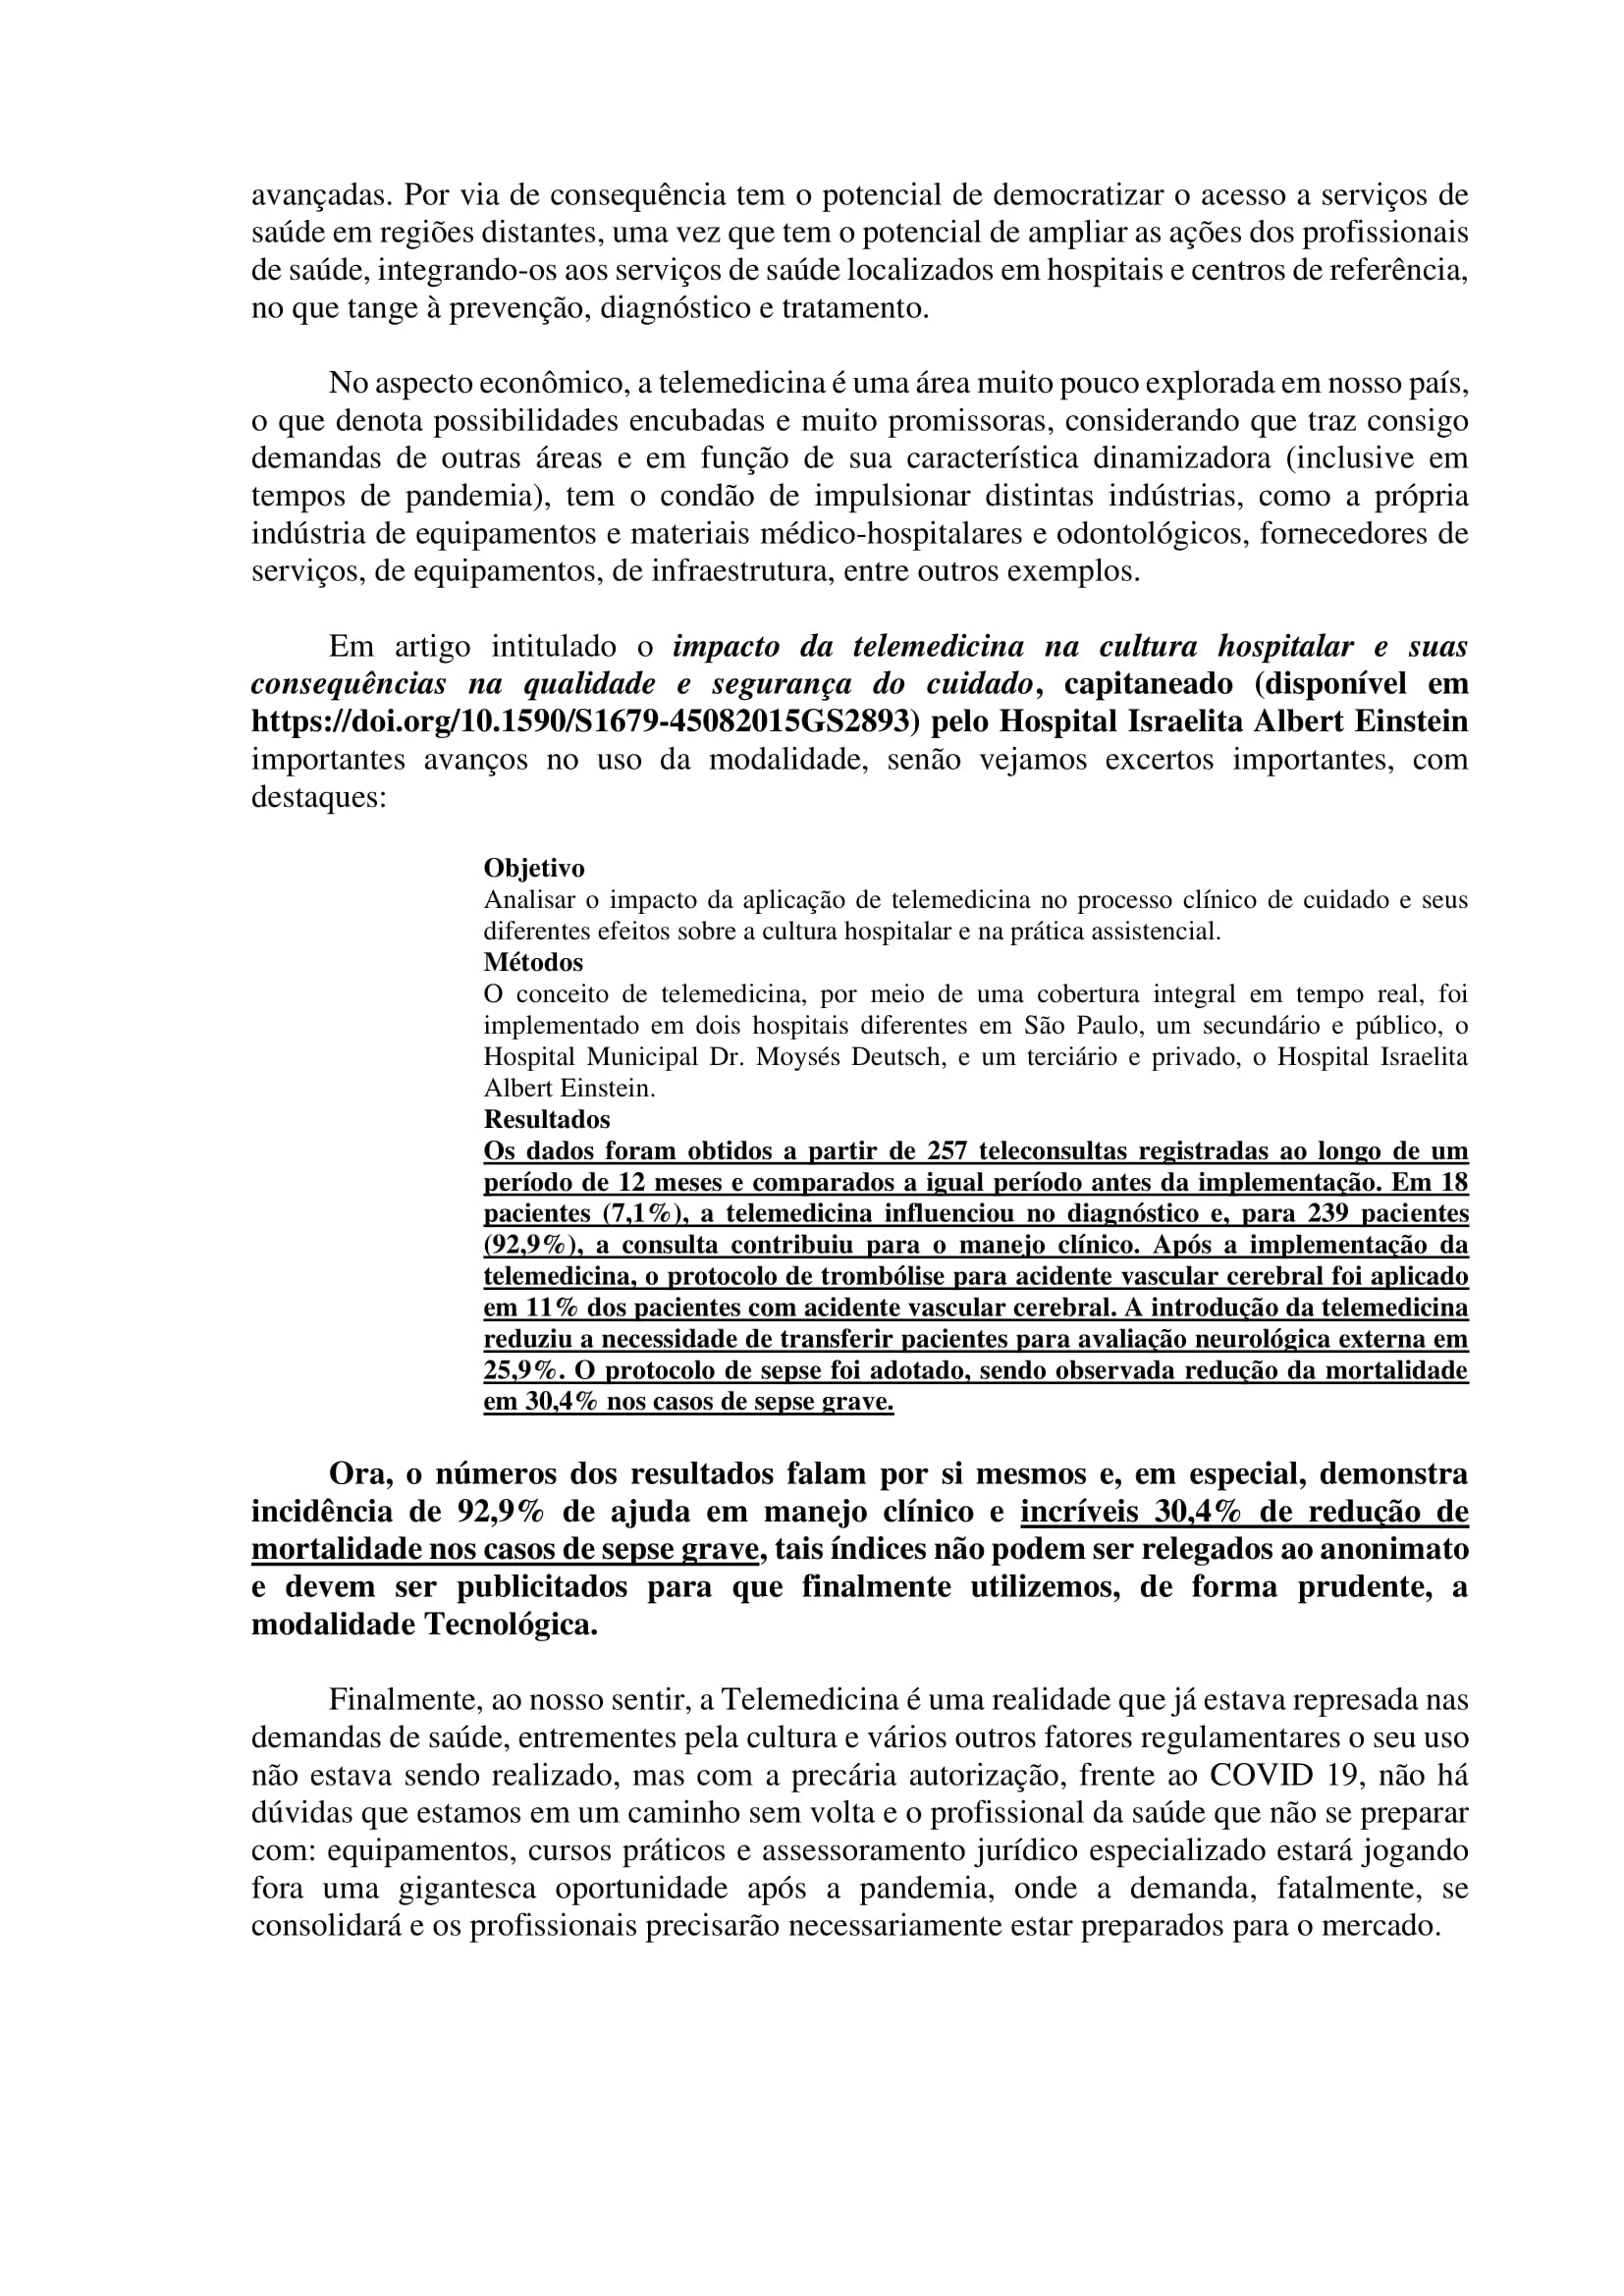 Artigo sobre Telemedicina e suas implicações regulatórias - Tiago Torres-14